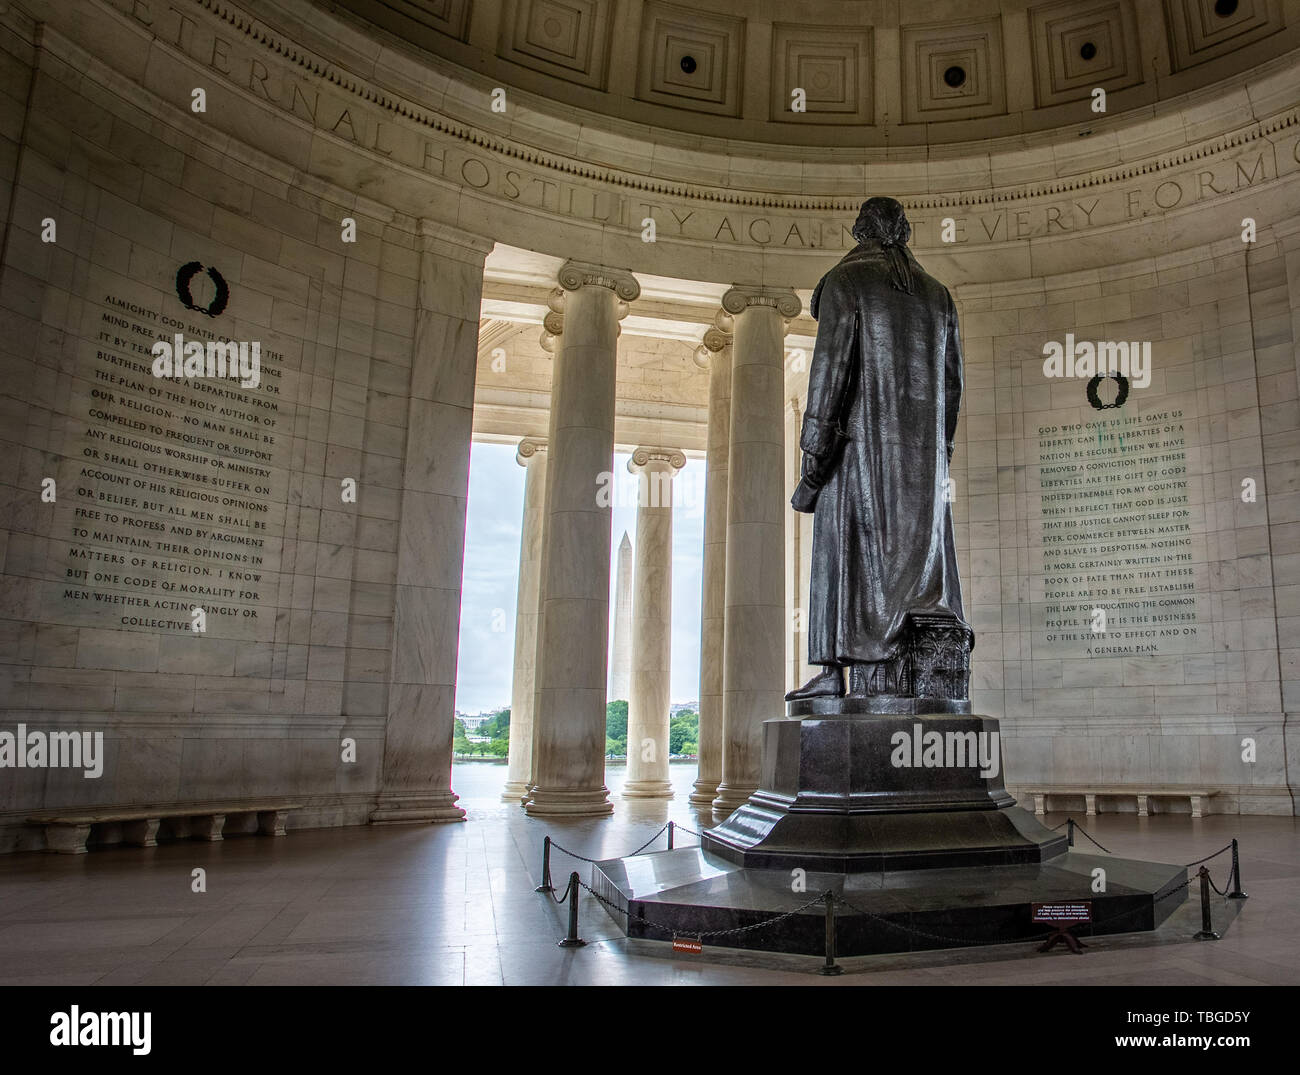 Estatua de Thomas Jefferson de la parte trasera mirando el Washington Memorial, el Monumento a Jefferson en Washington DC, EE.UU., el 13 de mayo de 2019 Foto de stock